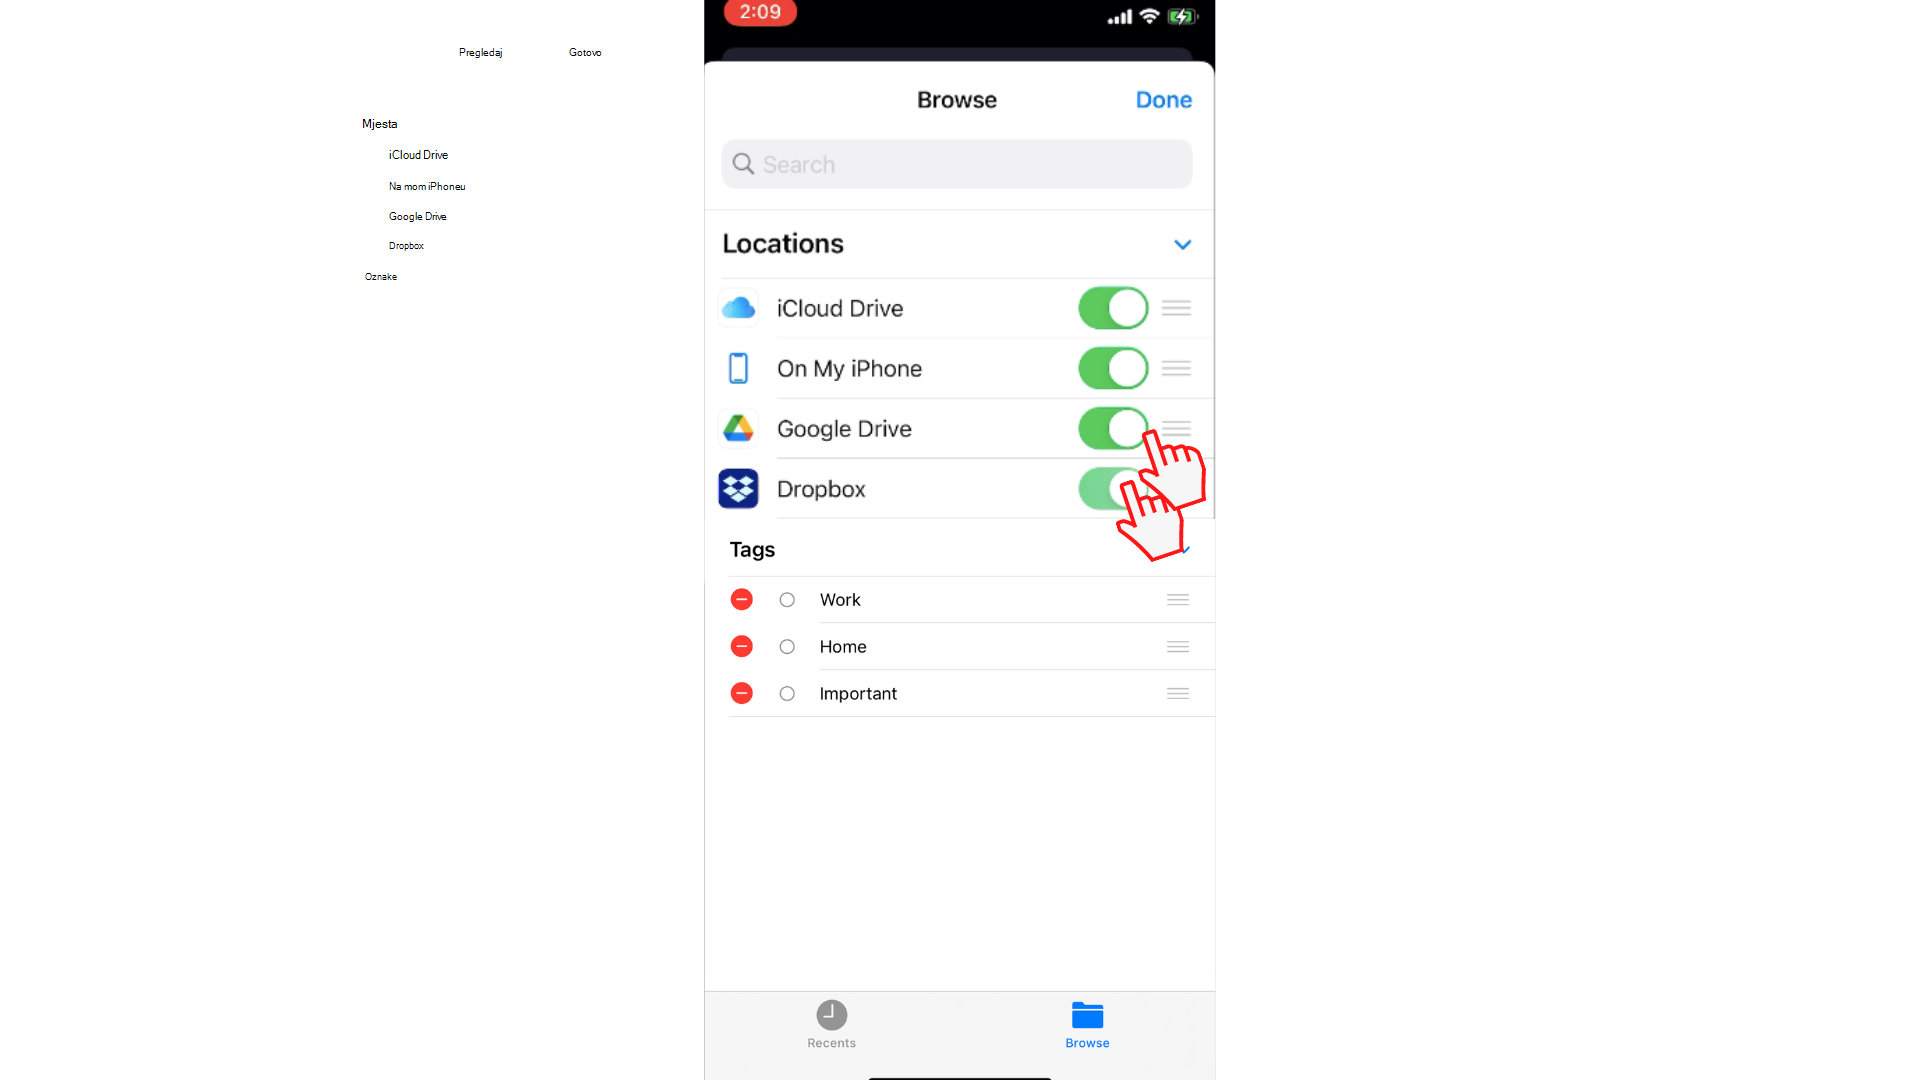 Korisnik klizne preklopni gumb kako bi omogućio pristup servisima Dropbox i Google Drive